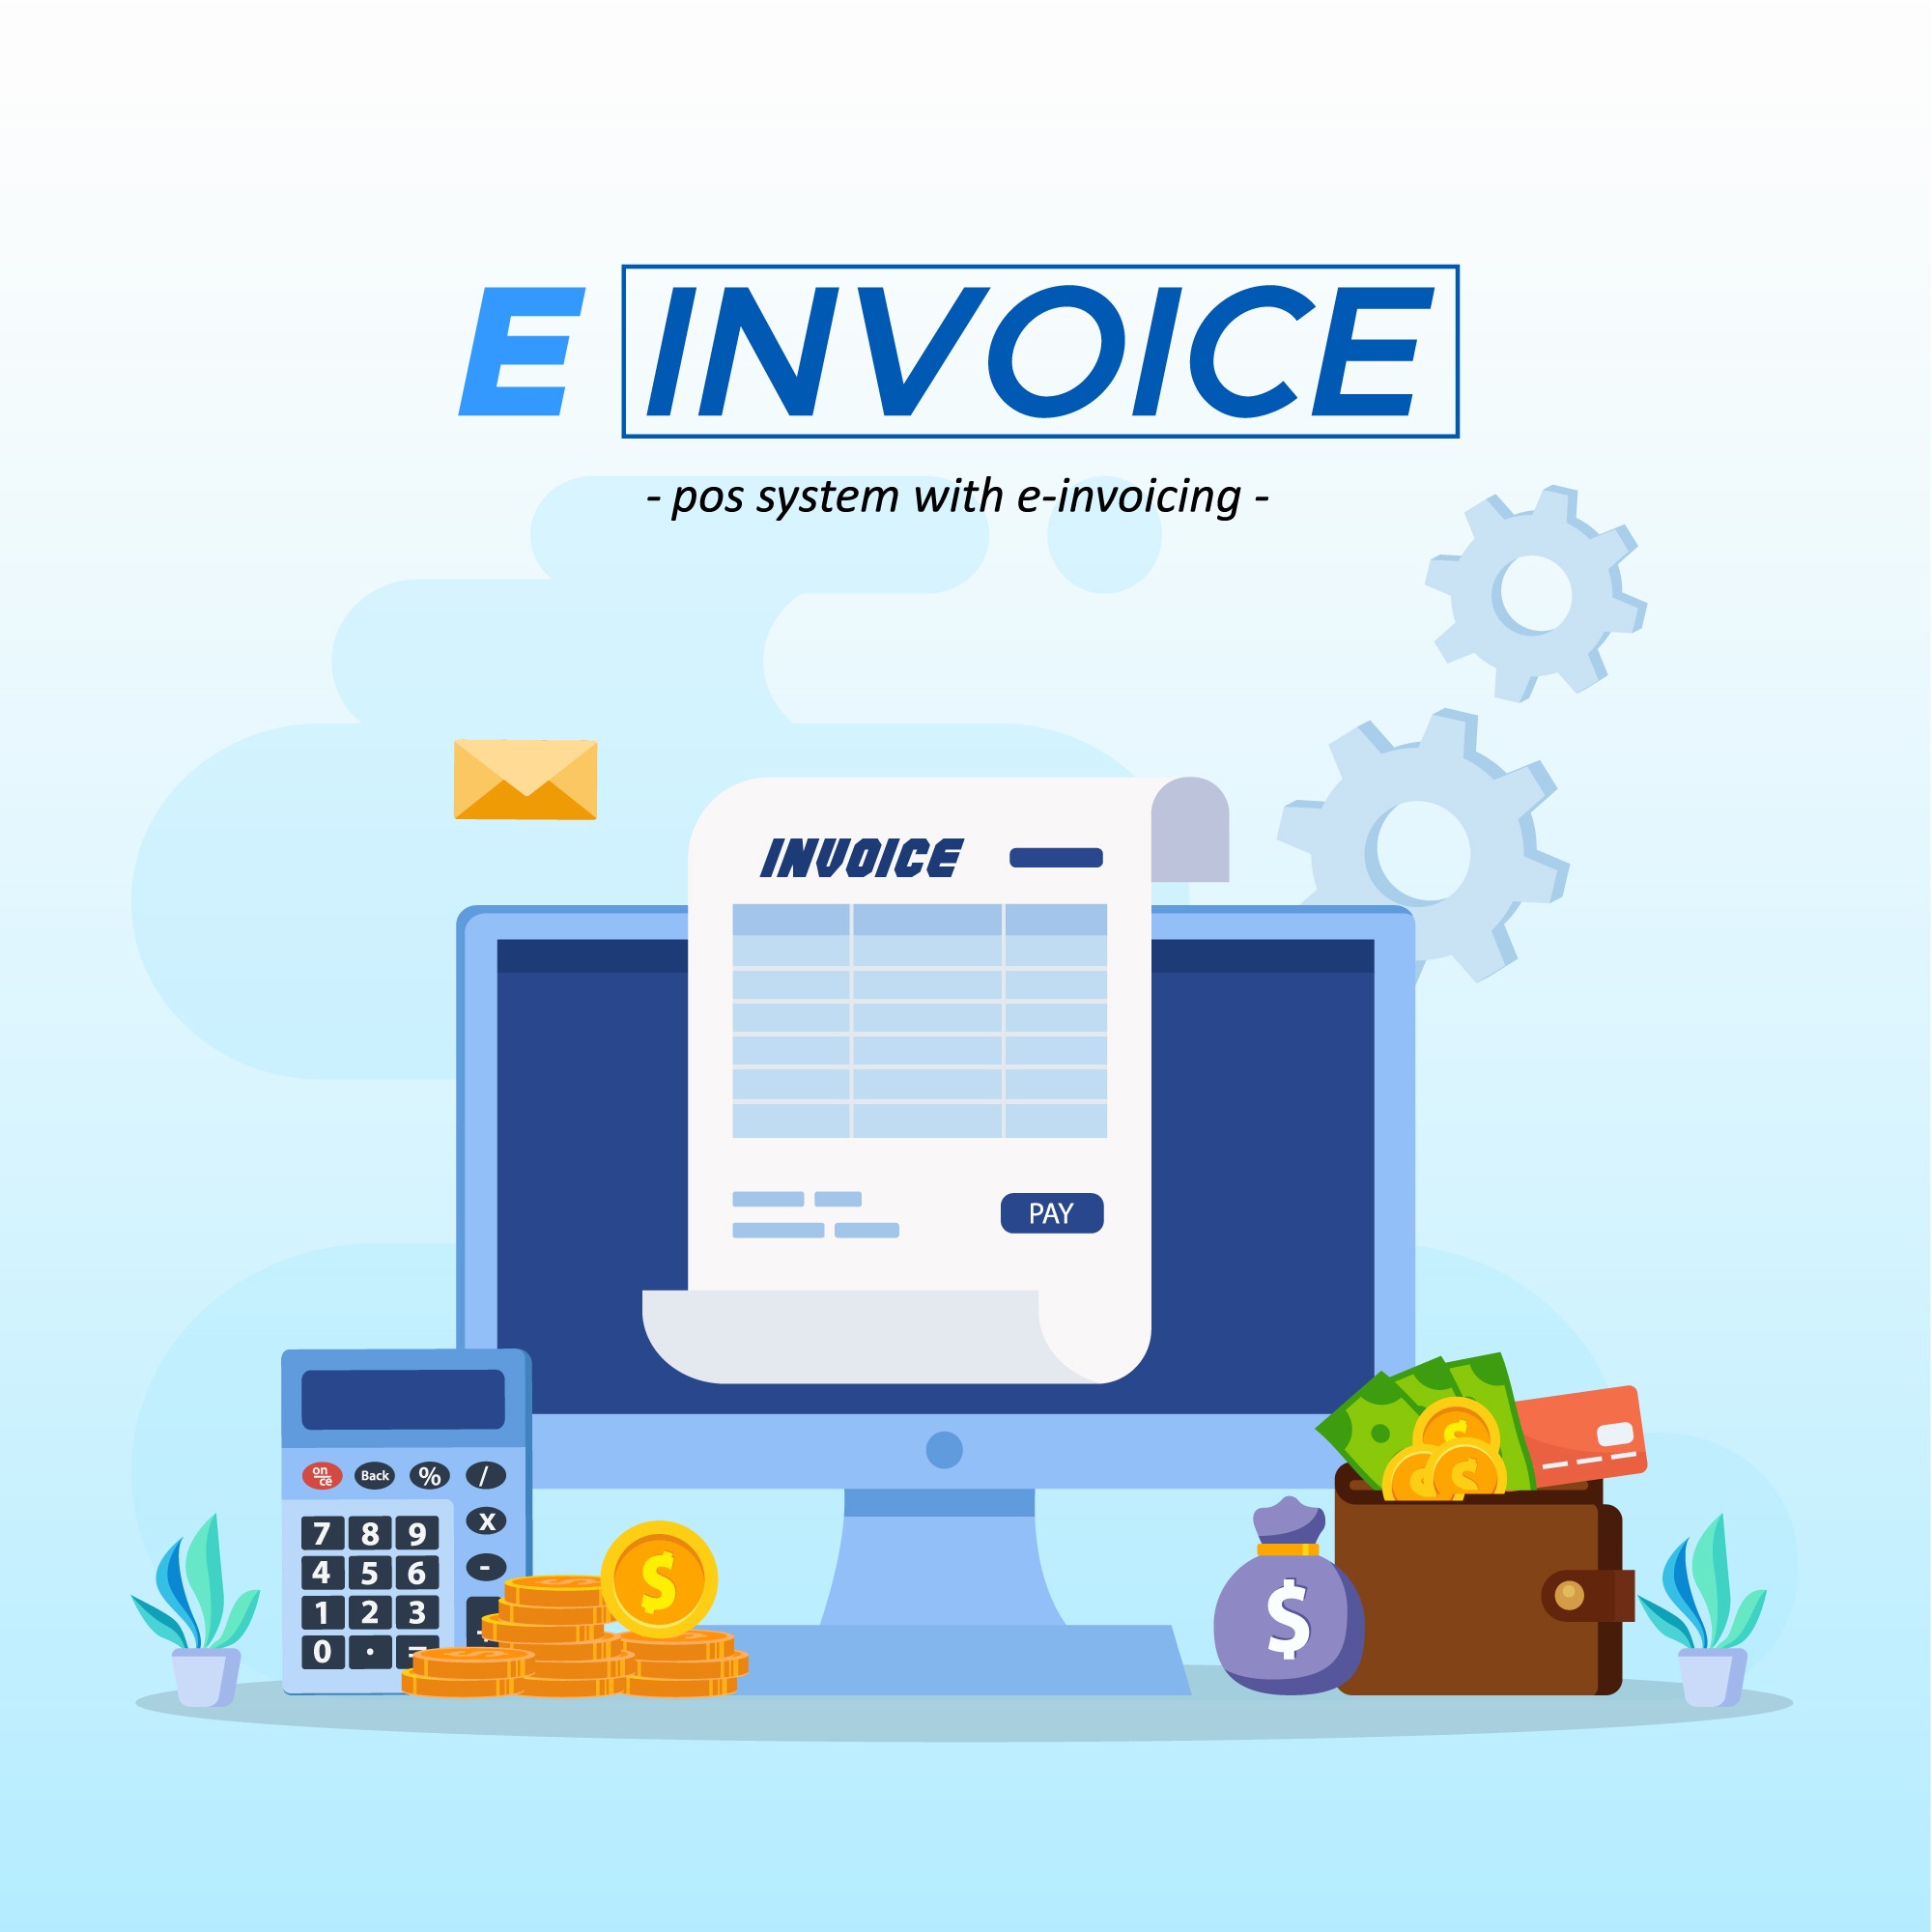 einvoice-image